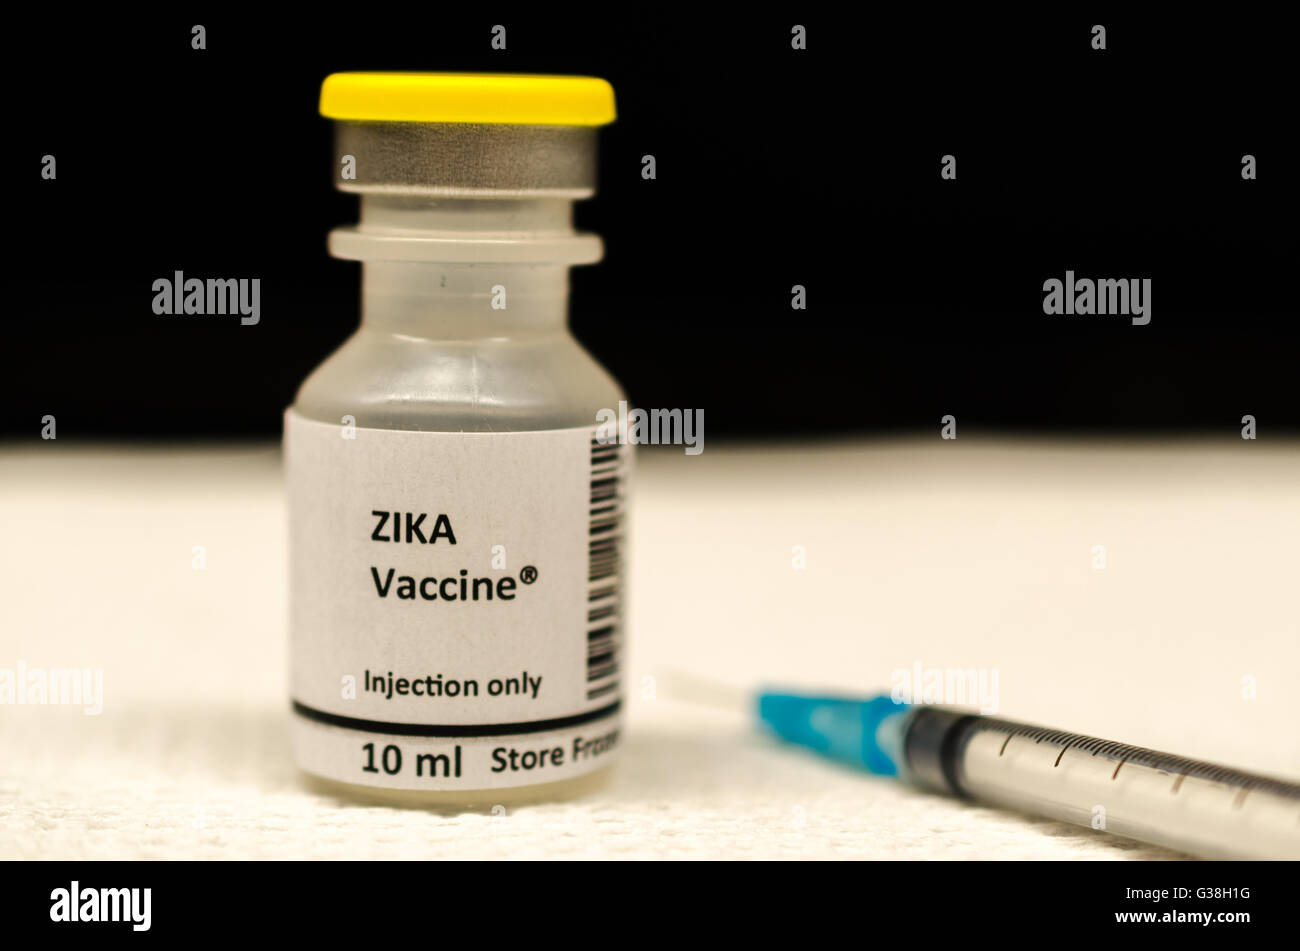 Zika Vaccine Stock Photo